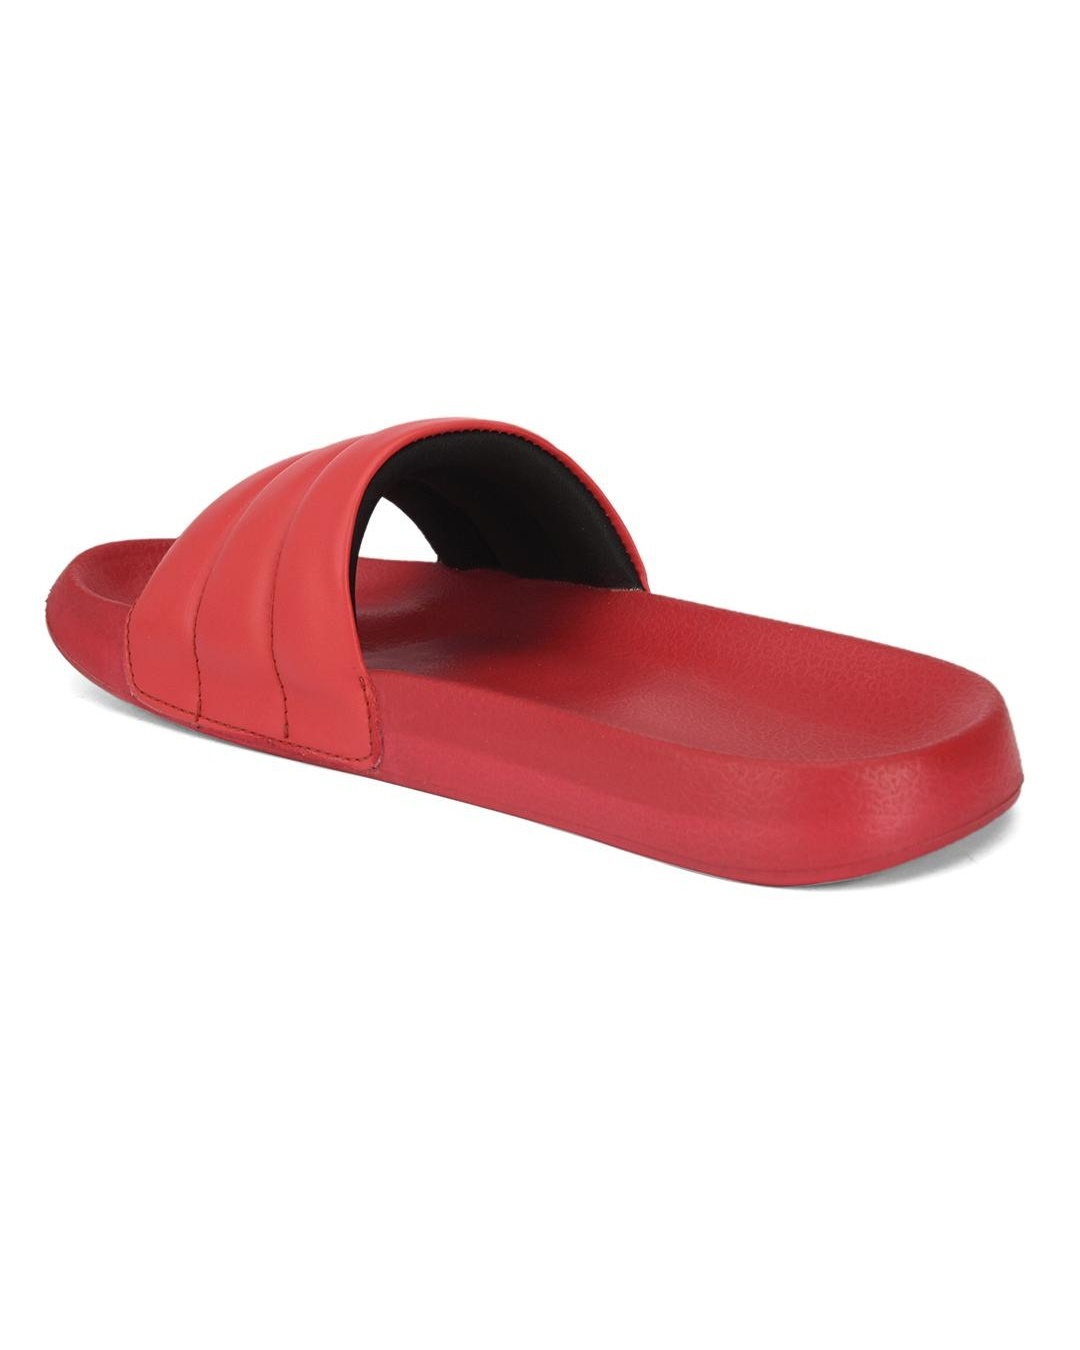 Buy Men's Red Sliders Online in India at Bewakoof